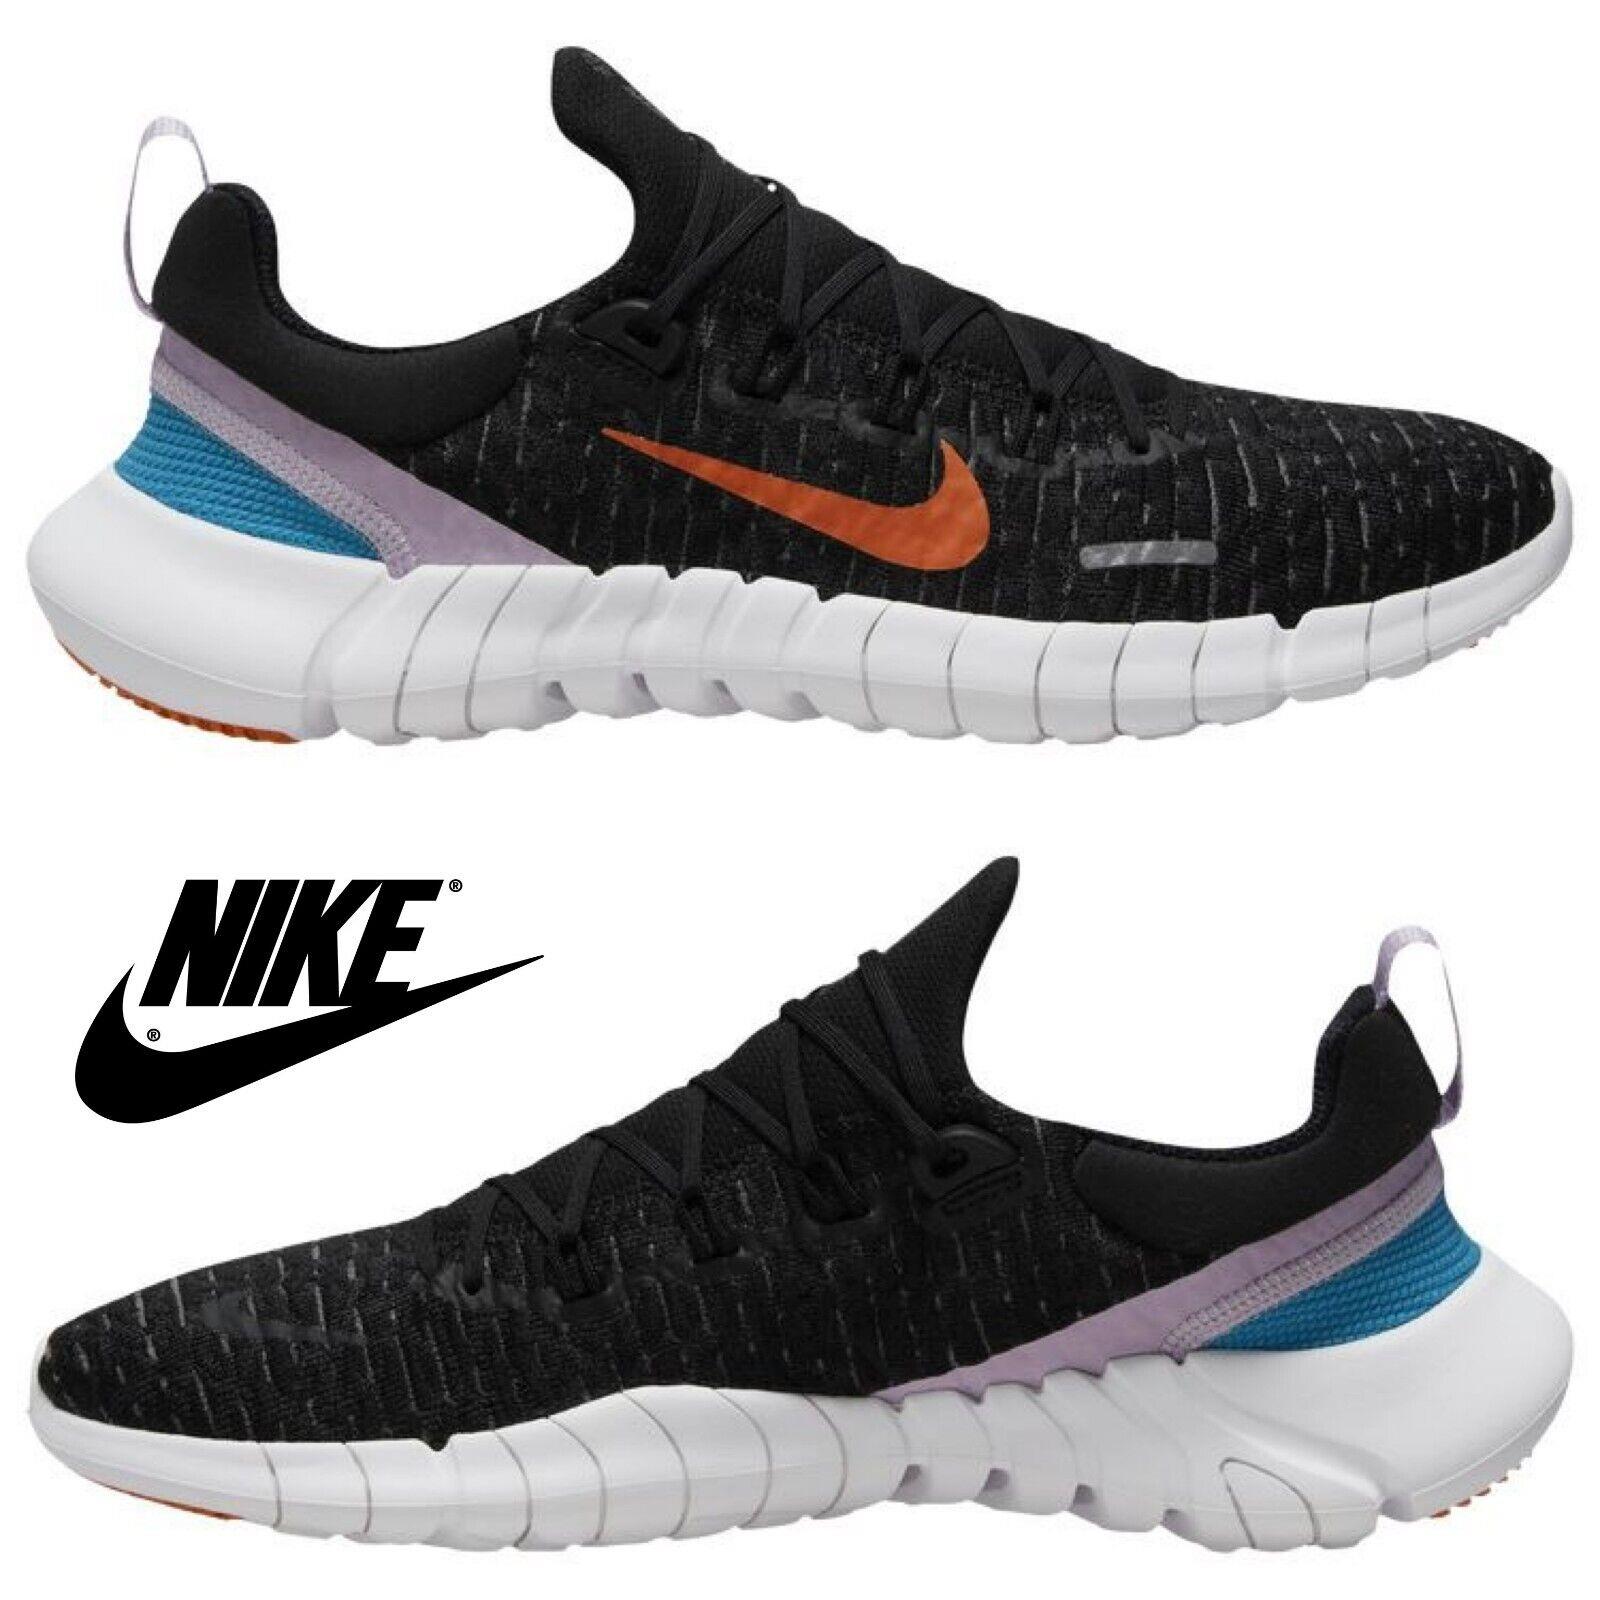 Nike Women`s Free Run 5.0 Running Shoes Running Sport Gym Casual Sneakers Black - Black , Black/Orange/Gray Manufacturer